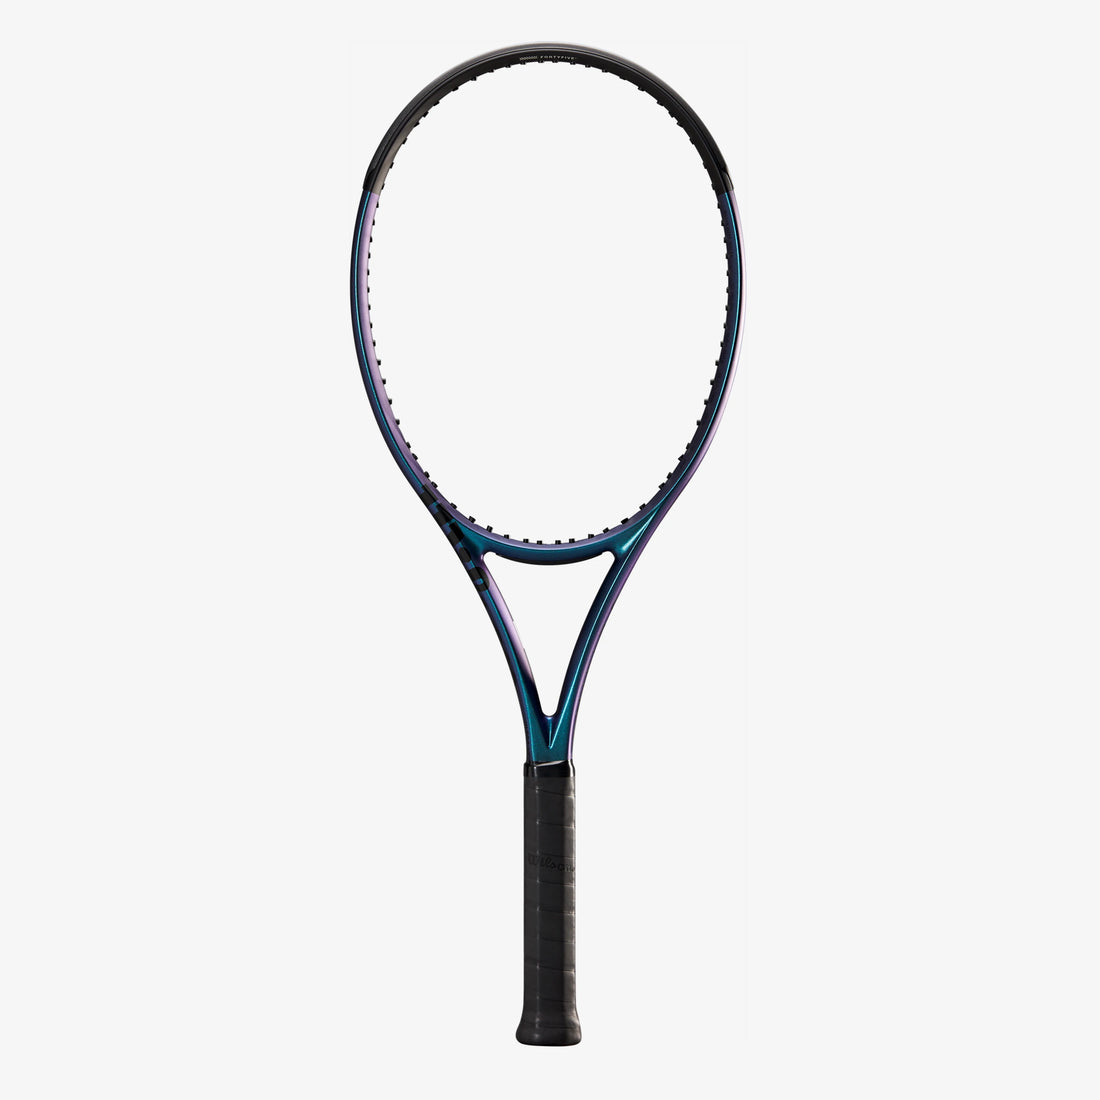 Wilson ULTRA 100UL V4 Tennis Racket